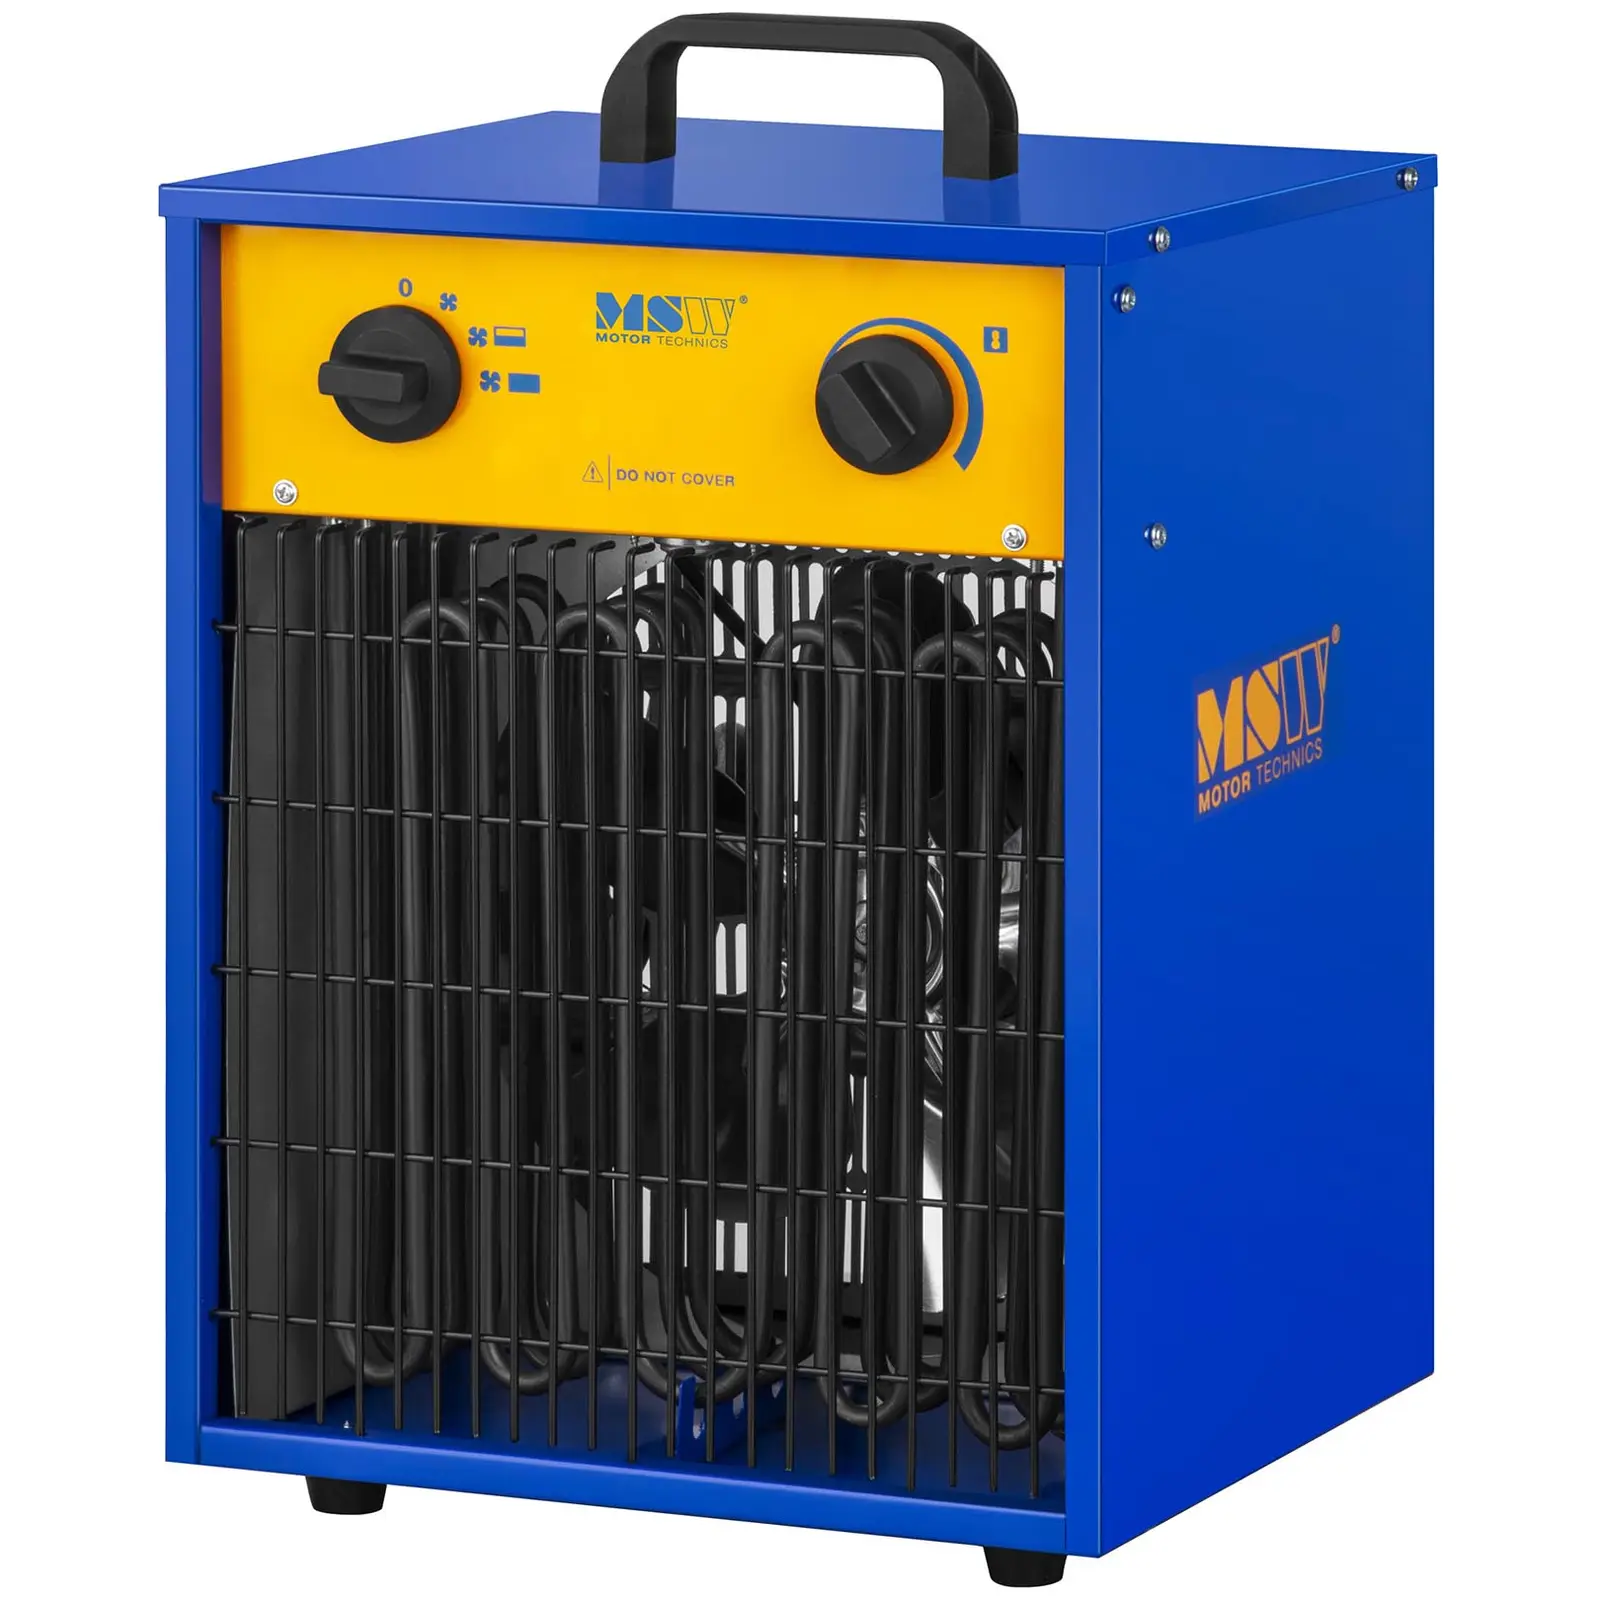 B-Ware Elektroheizer mit Kühlfunktion - 0 bis 85 °C - 9.000 W